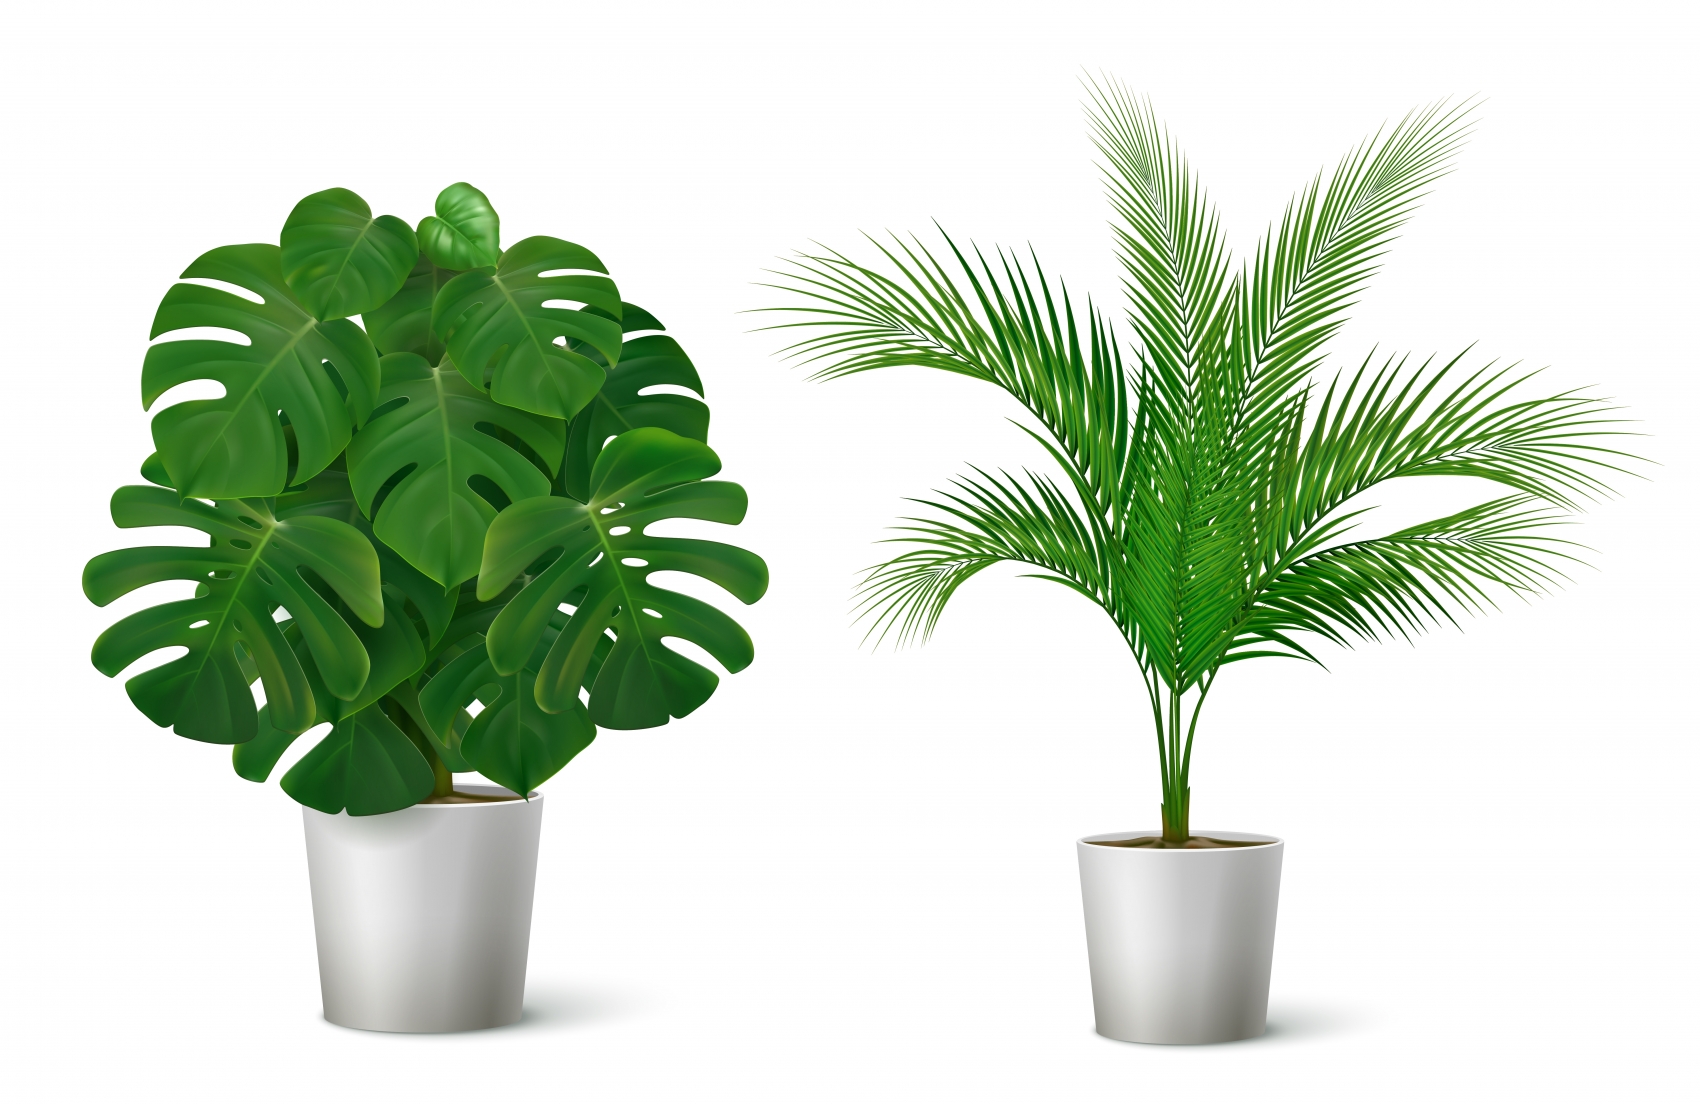 盆栽绿色植物素材下载 欧莱凯设计网 08php Com